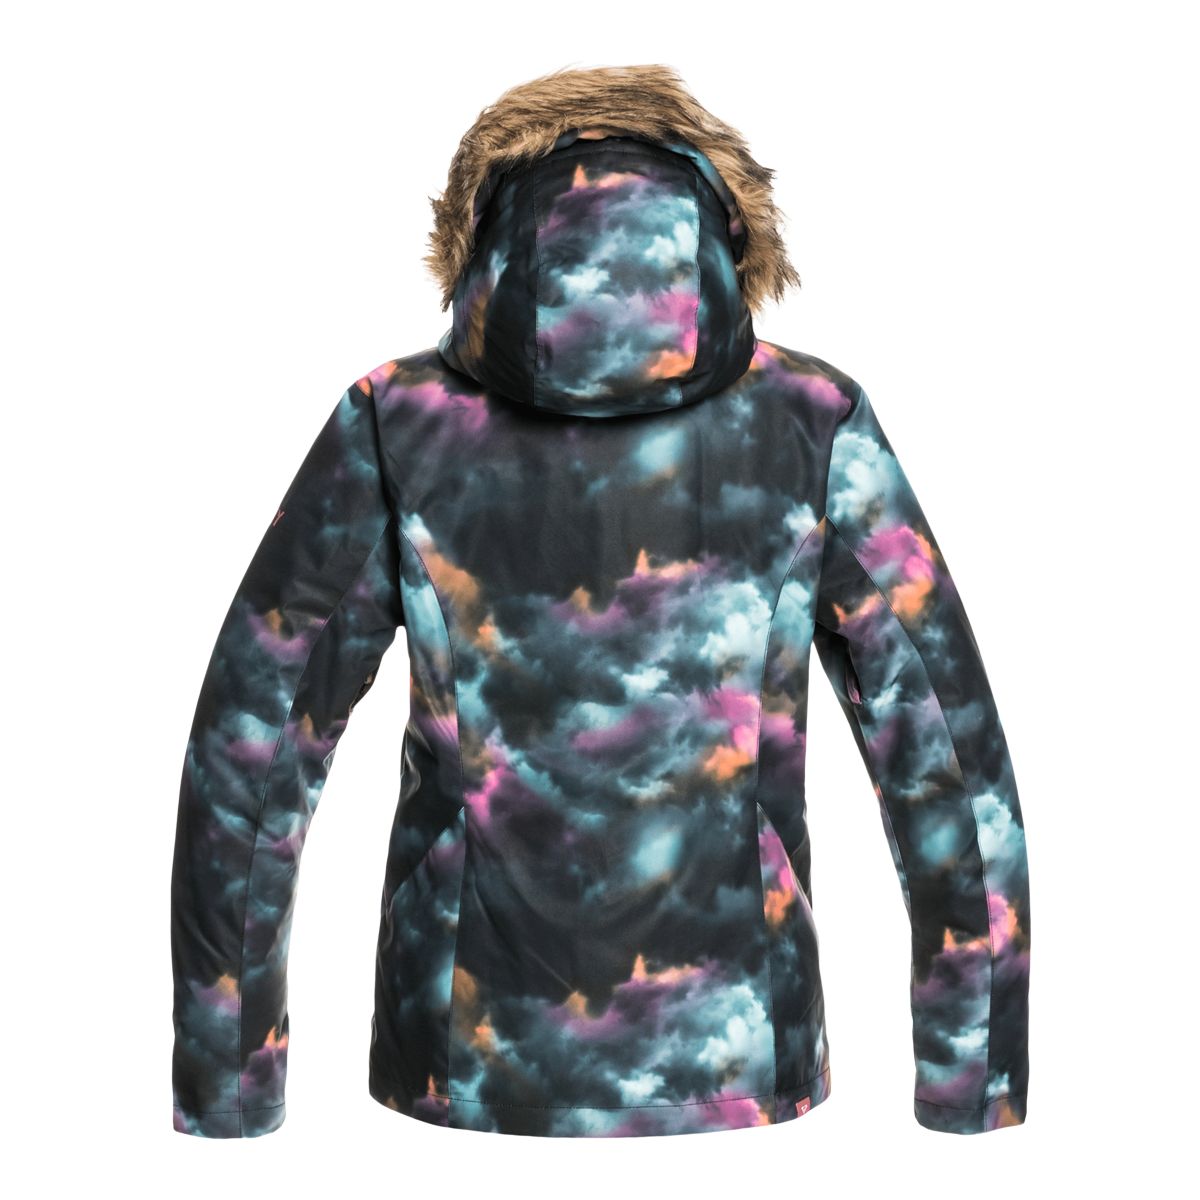 Roxy Women's Jet Ski Winter Ski Jacket, Insulated, Hooded, Waterproof